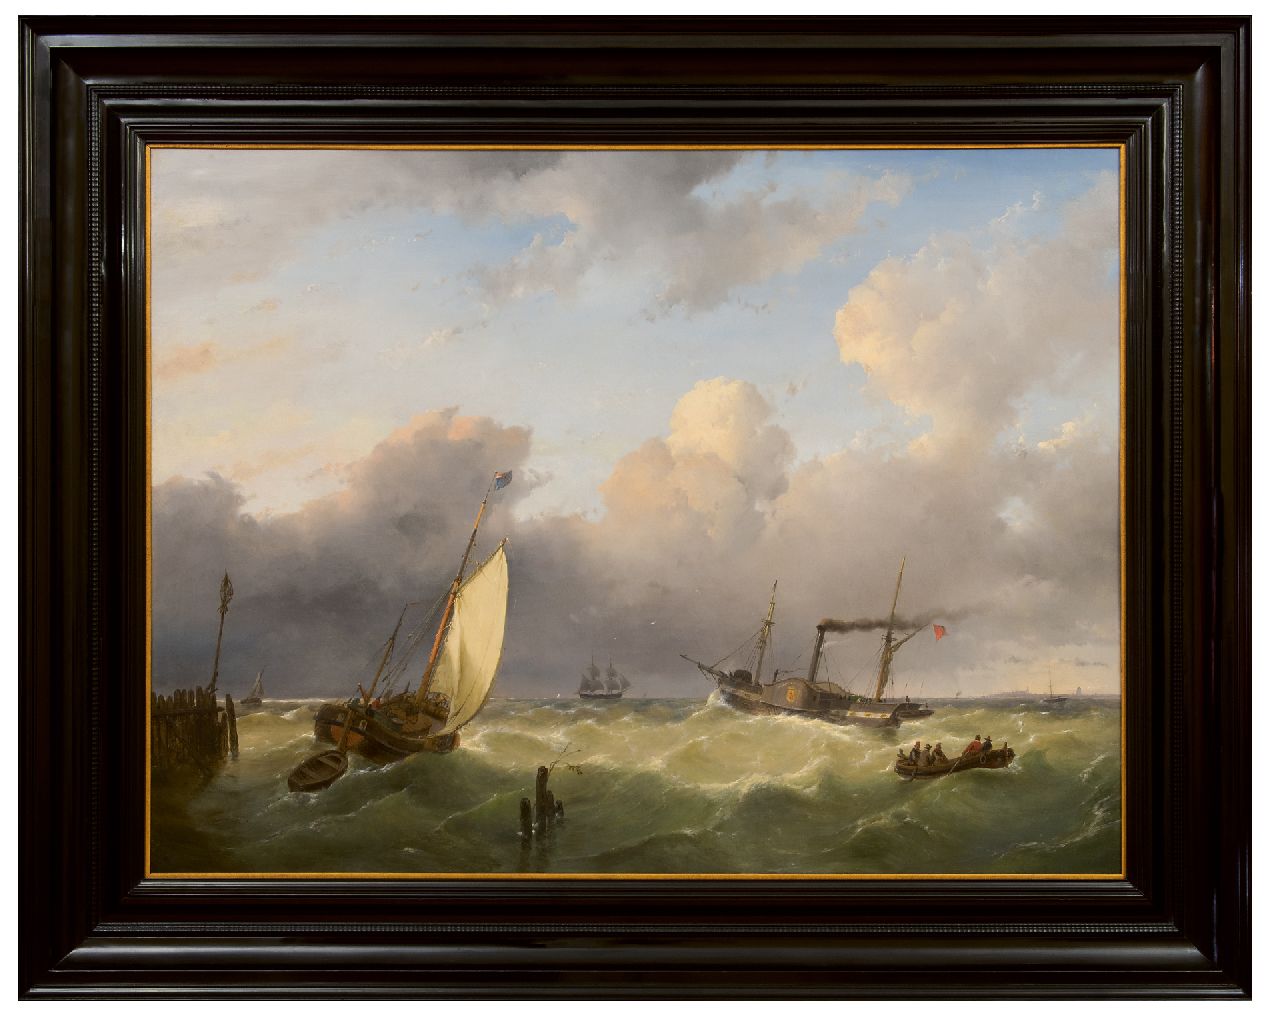 Schelfhout A.  | Andreas Schelfhout | Schilderijen te koop aangeboden | Een smak en een raderstoomboot op zee, olieverf op paneel 67,6 x 90,6 cm, gesigneerd linksonder en gedateerd 1845